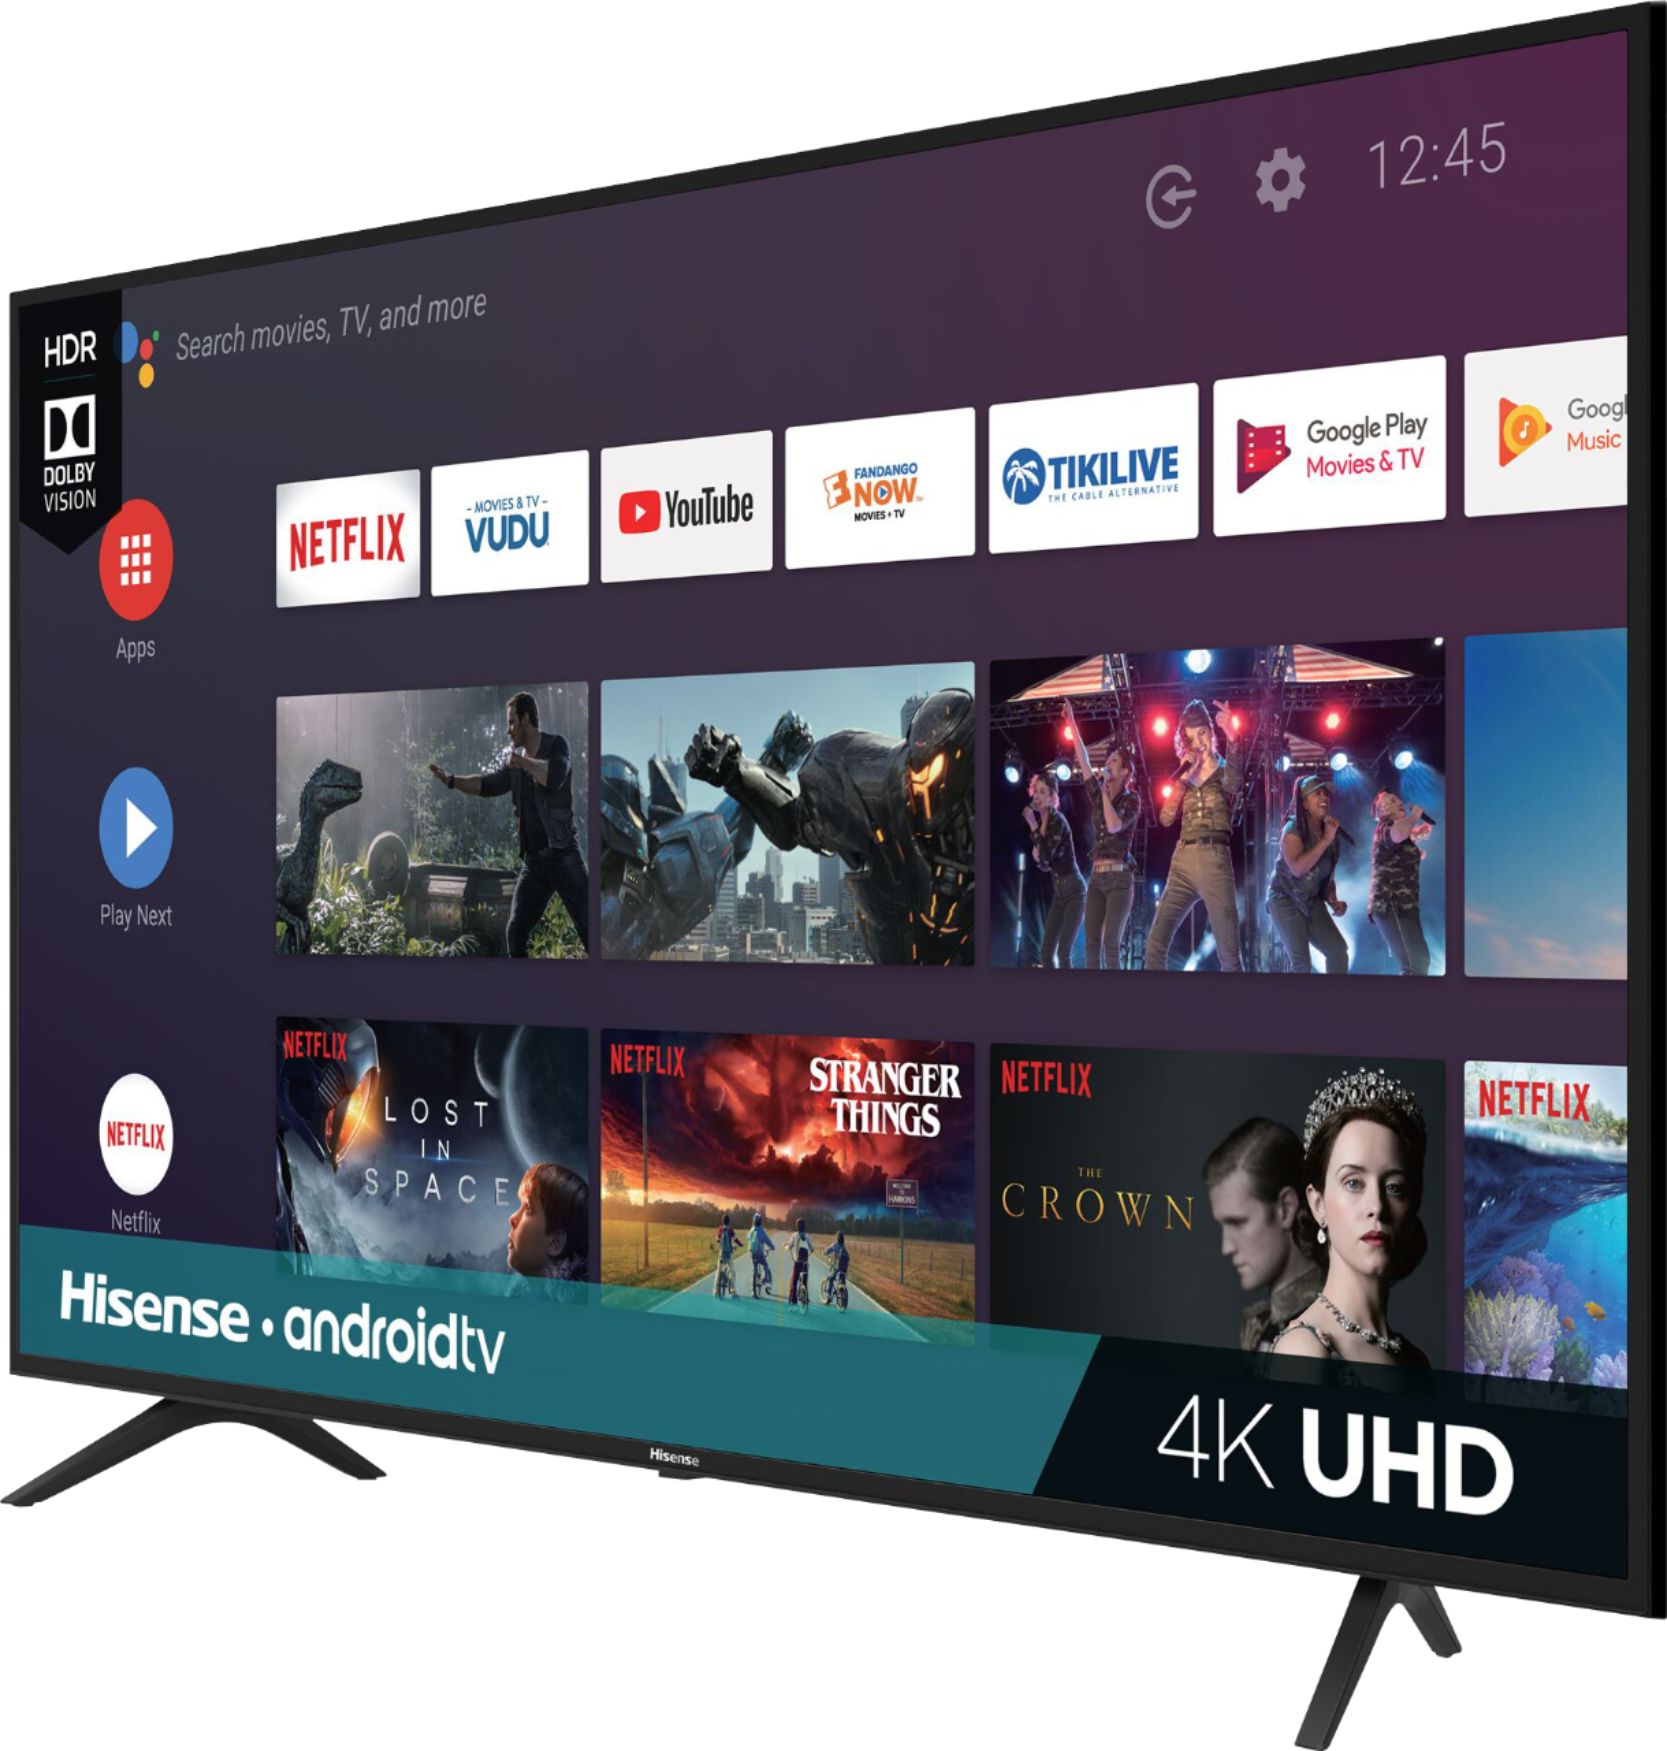 خرید تلویزیون هایسنس 65 اینچ در سلام بابا